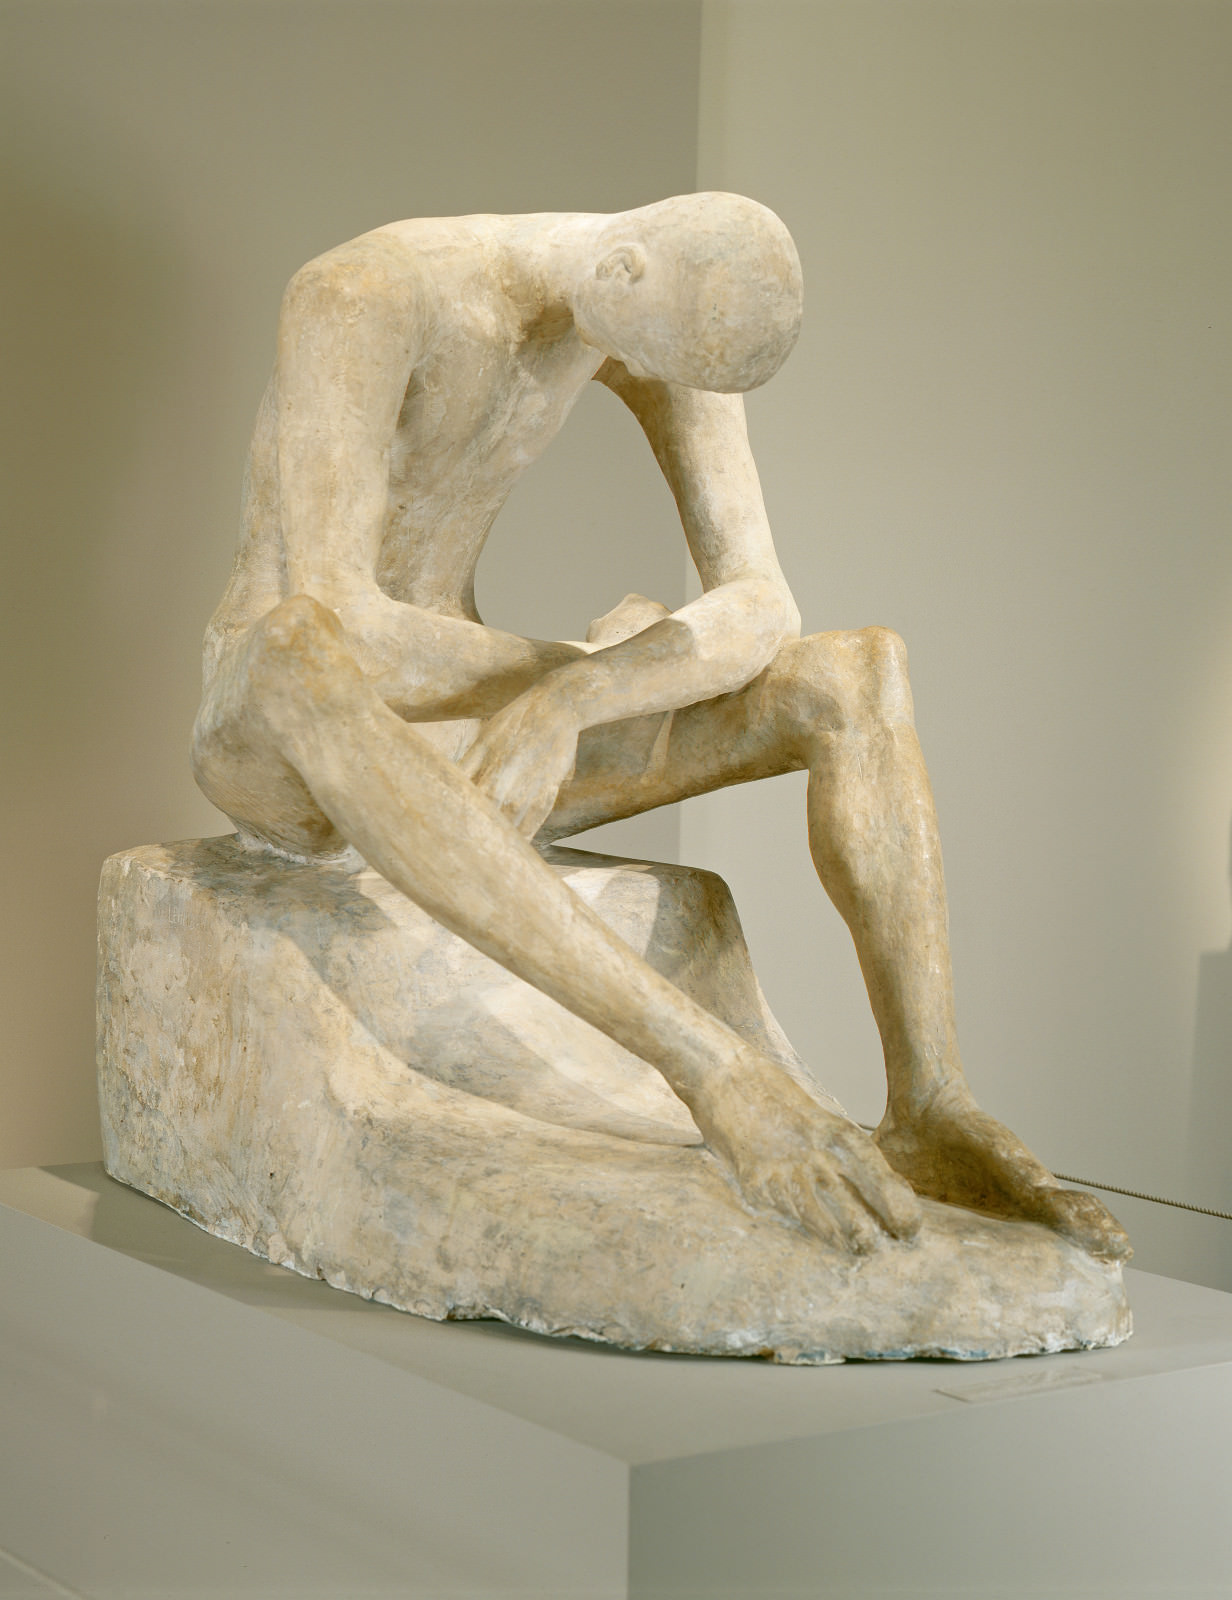 Σύκο.. 2 - Νεολαία Sitting, Wilhelm Lehmbruck, 1917, ένωση του χρωματιστού σοβά, 103.2 x 76.2 x 115.5 cm. Εθνική Γκαλερί τέχνης, Ουάσιγκτον. Fundo Andrew W. Η Mellon.